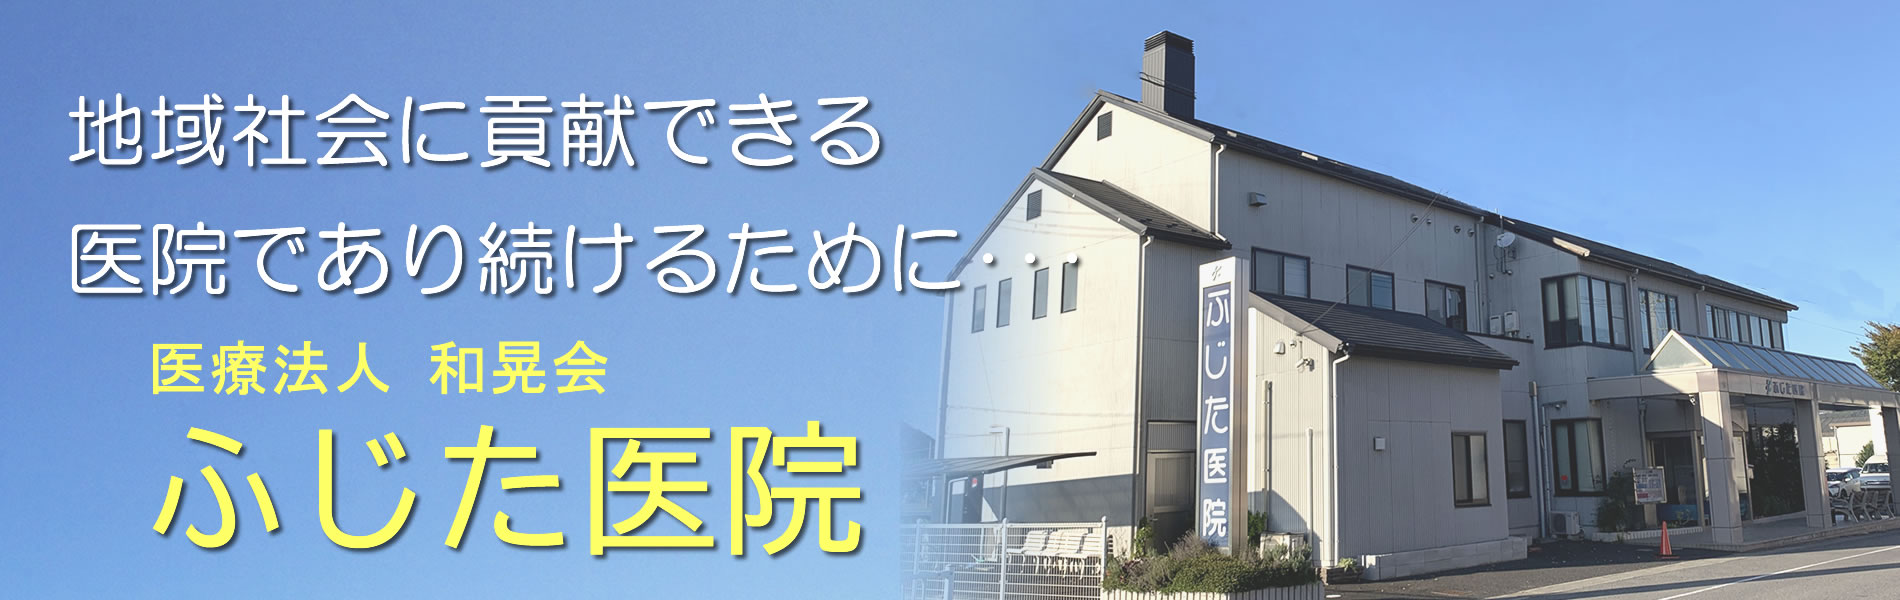 地域社会に貢献できる医院であり続けるために、日々診療を重ねる滋賀県湖南市柑子袋のふじた医院です。